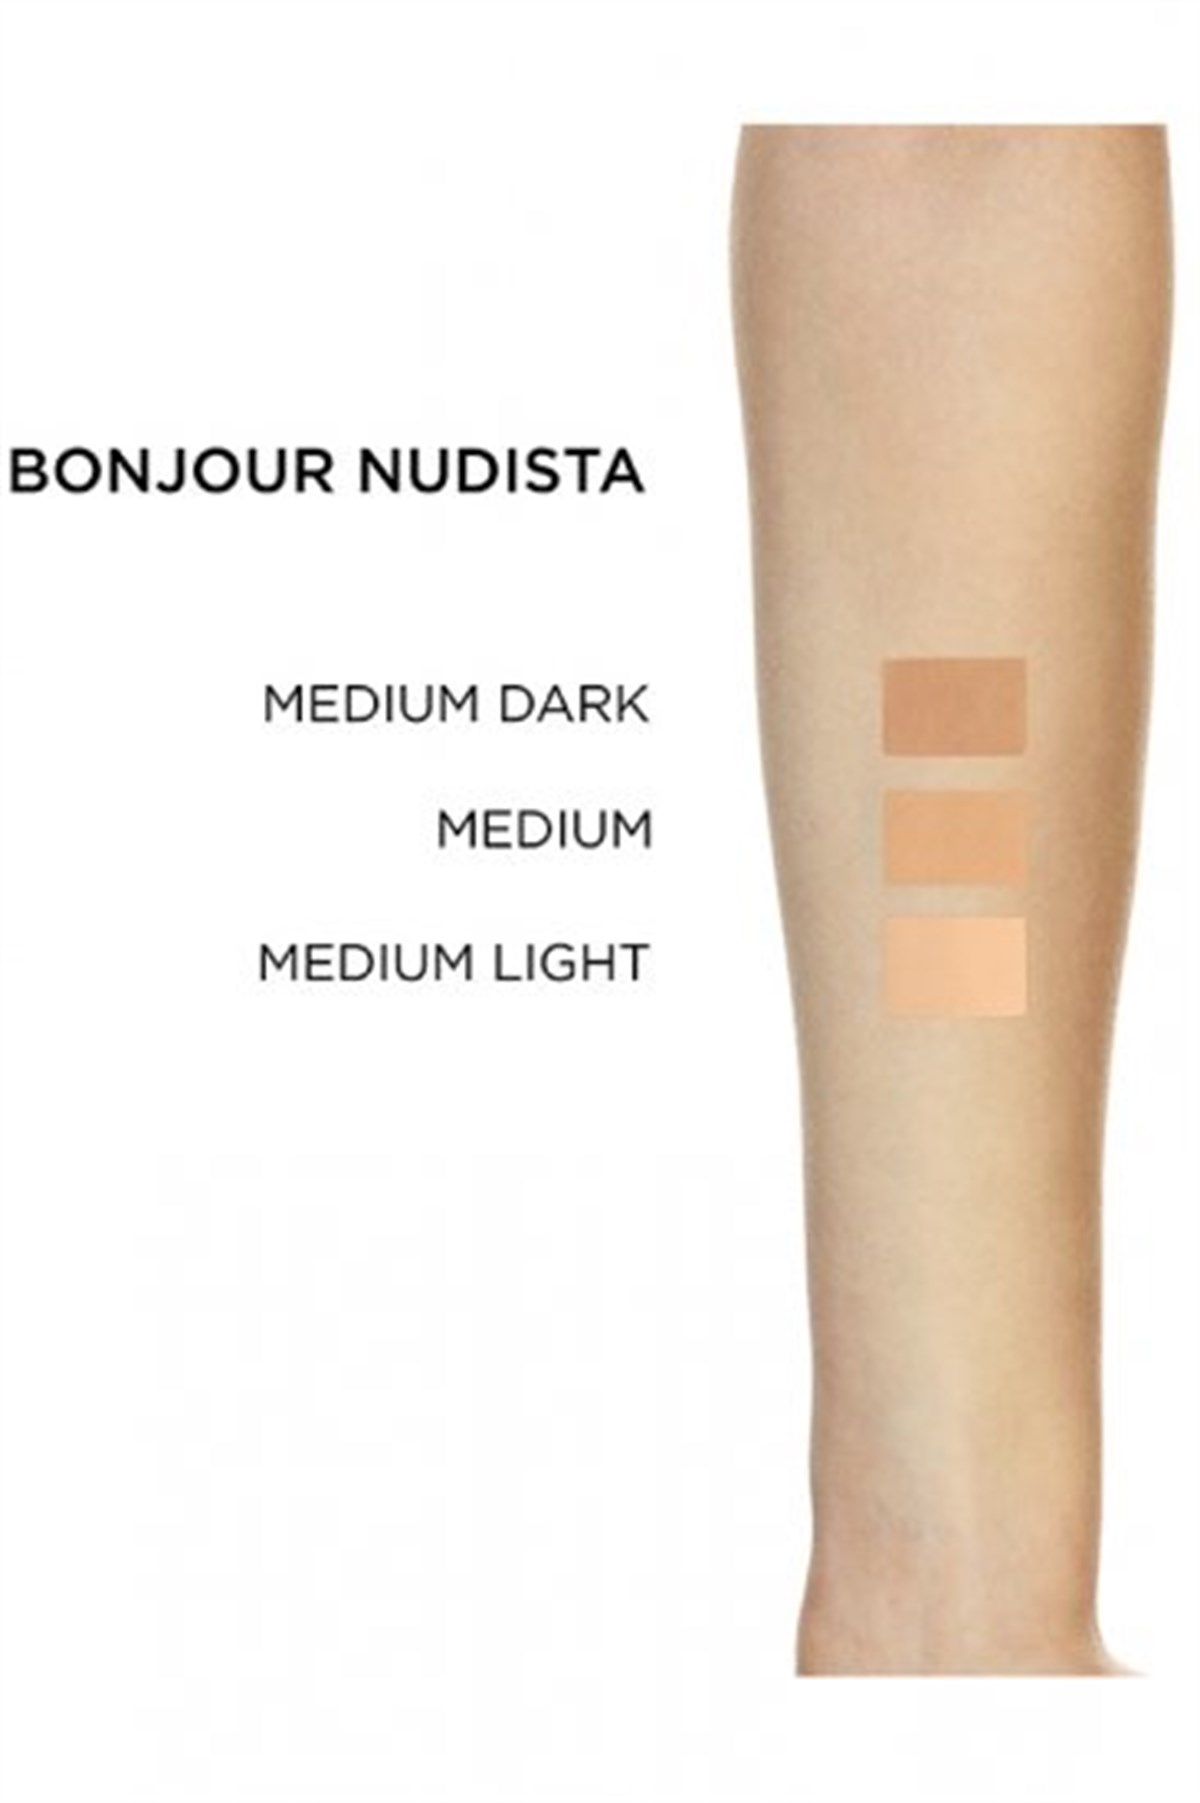 LOreal Paris Bonjour Nudista Aydınlık Veren Renkli Nemlendirici 04 Medium  Dark Koyu Ton | Ehersey.com